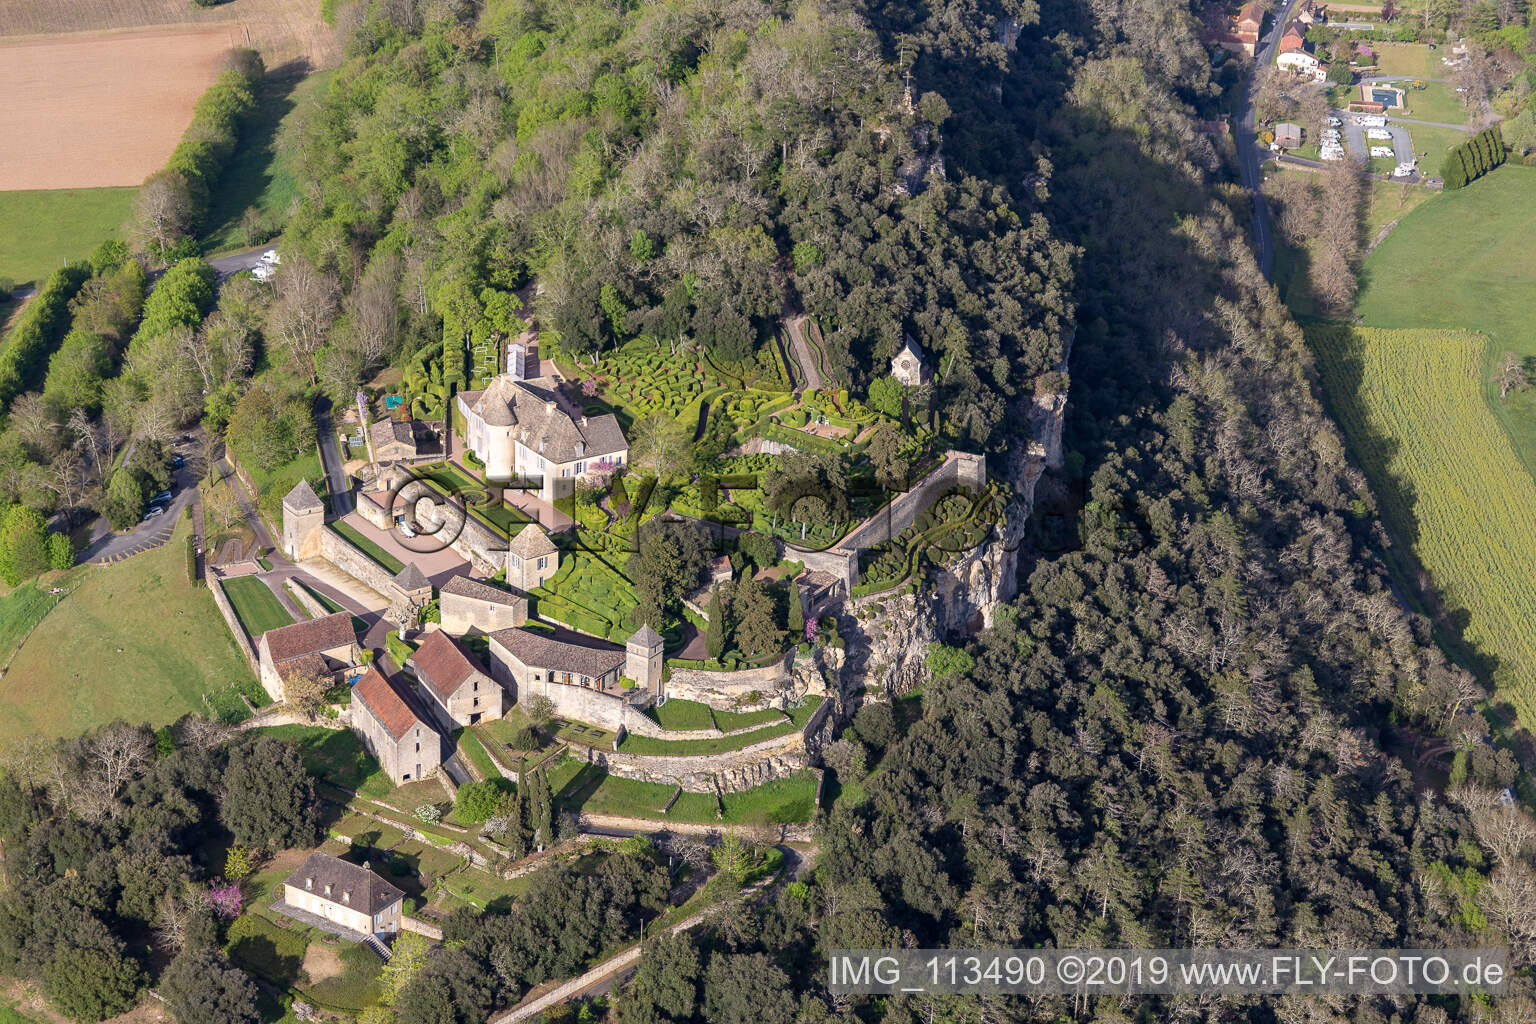 Jardins de Marqueyssac in Vézac im Bundesland Dordogne, Frankreich aus der Luft